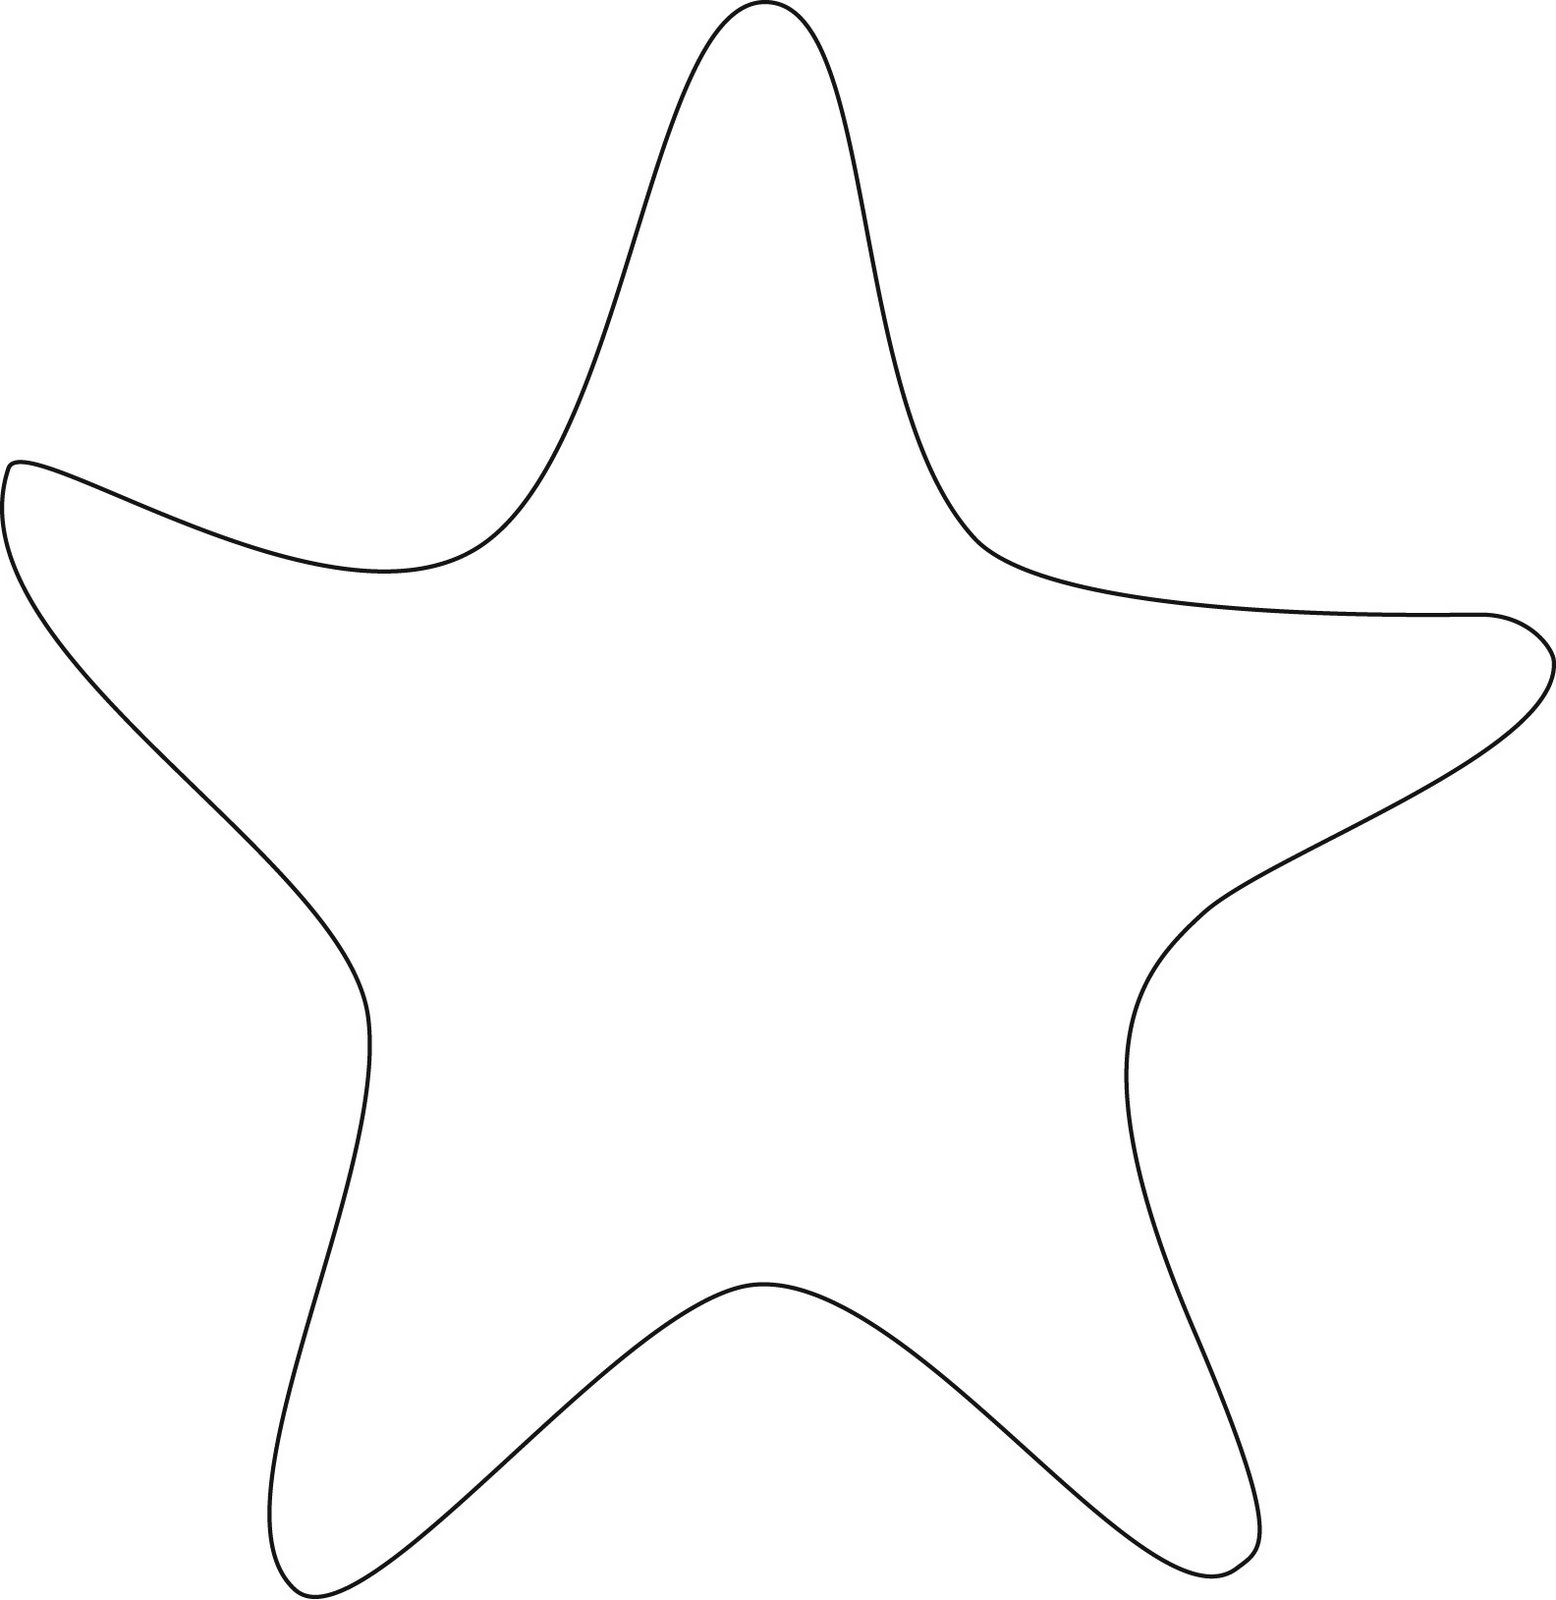 Starfish Template Free Printable - Printable World Holiday